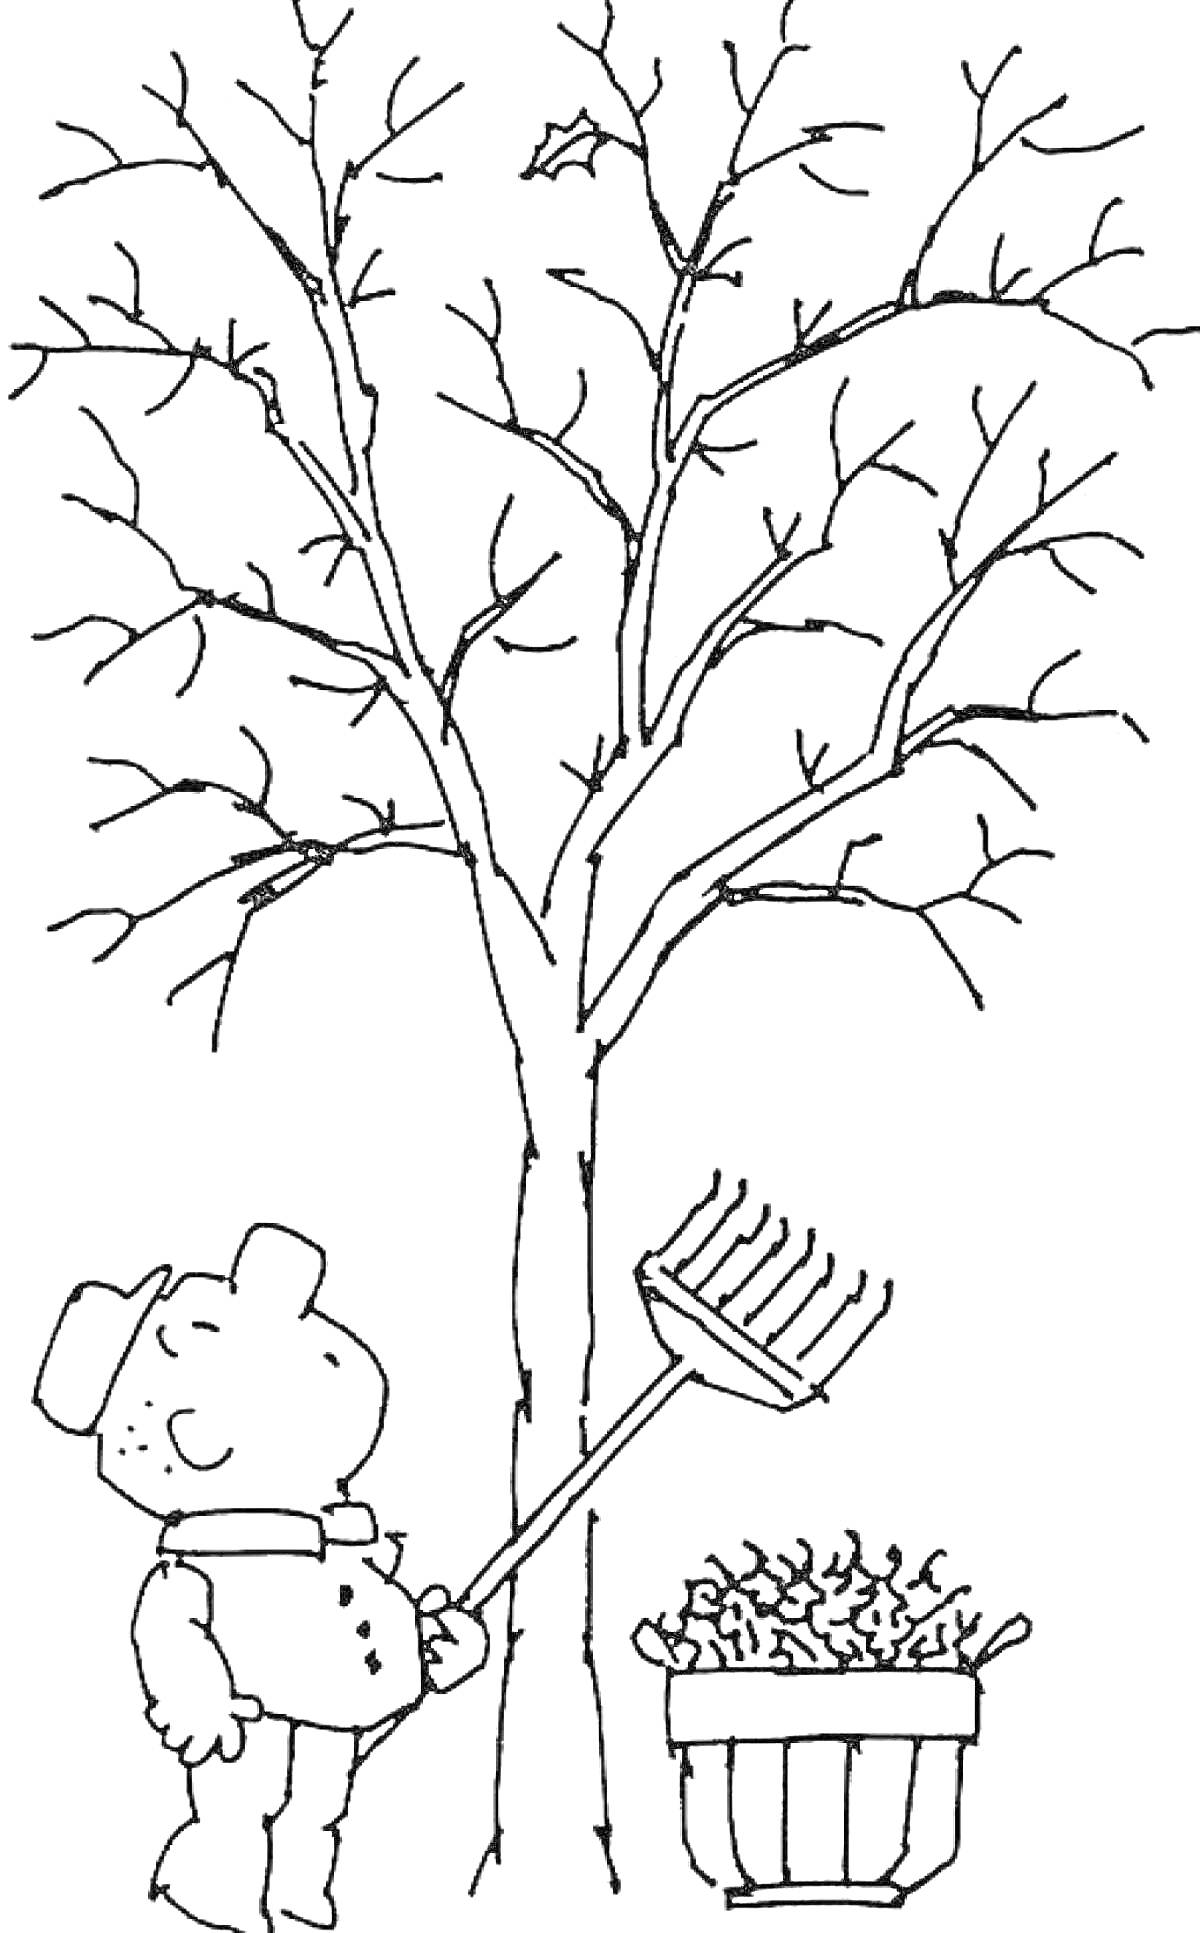 Раскраска Дерево без листьев, человек с граблями и корзина с листьями